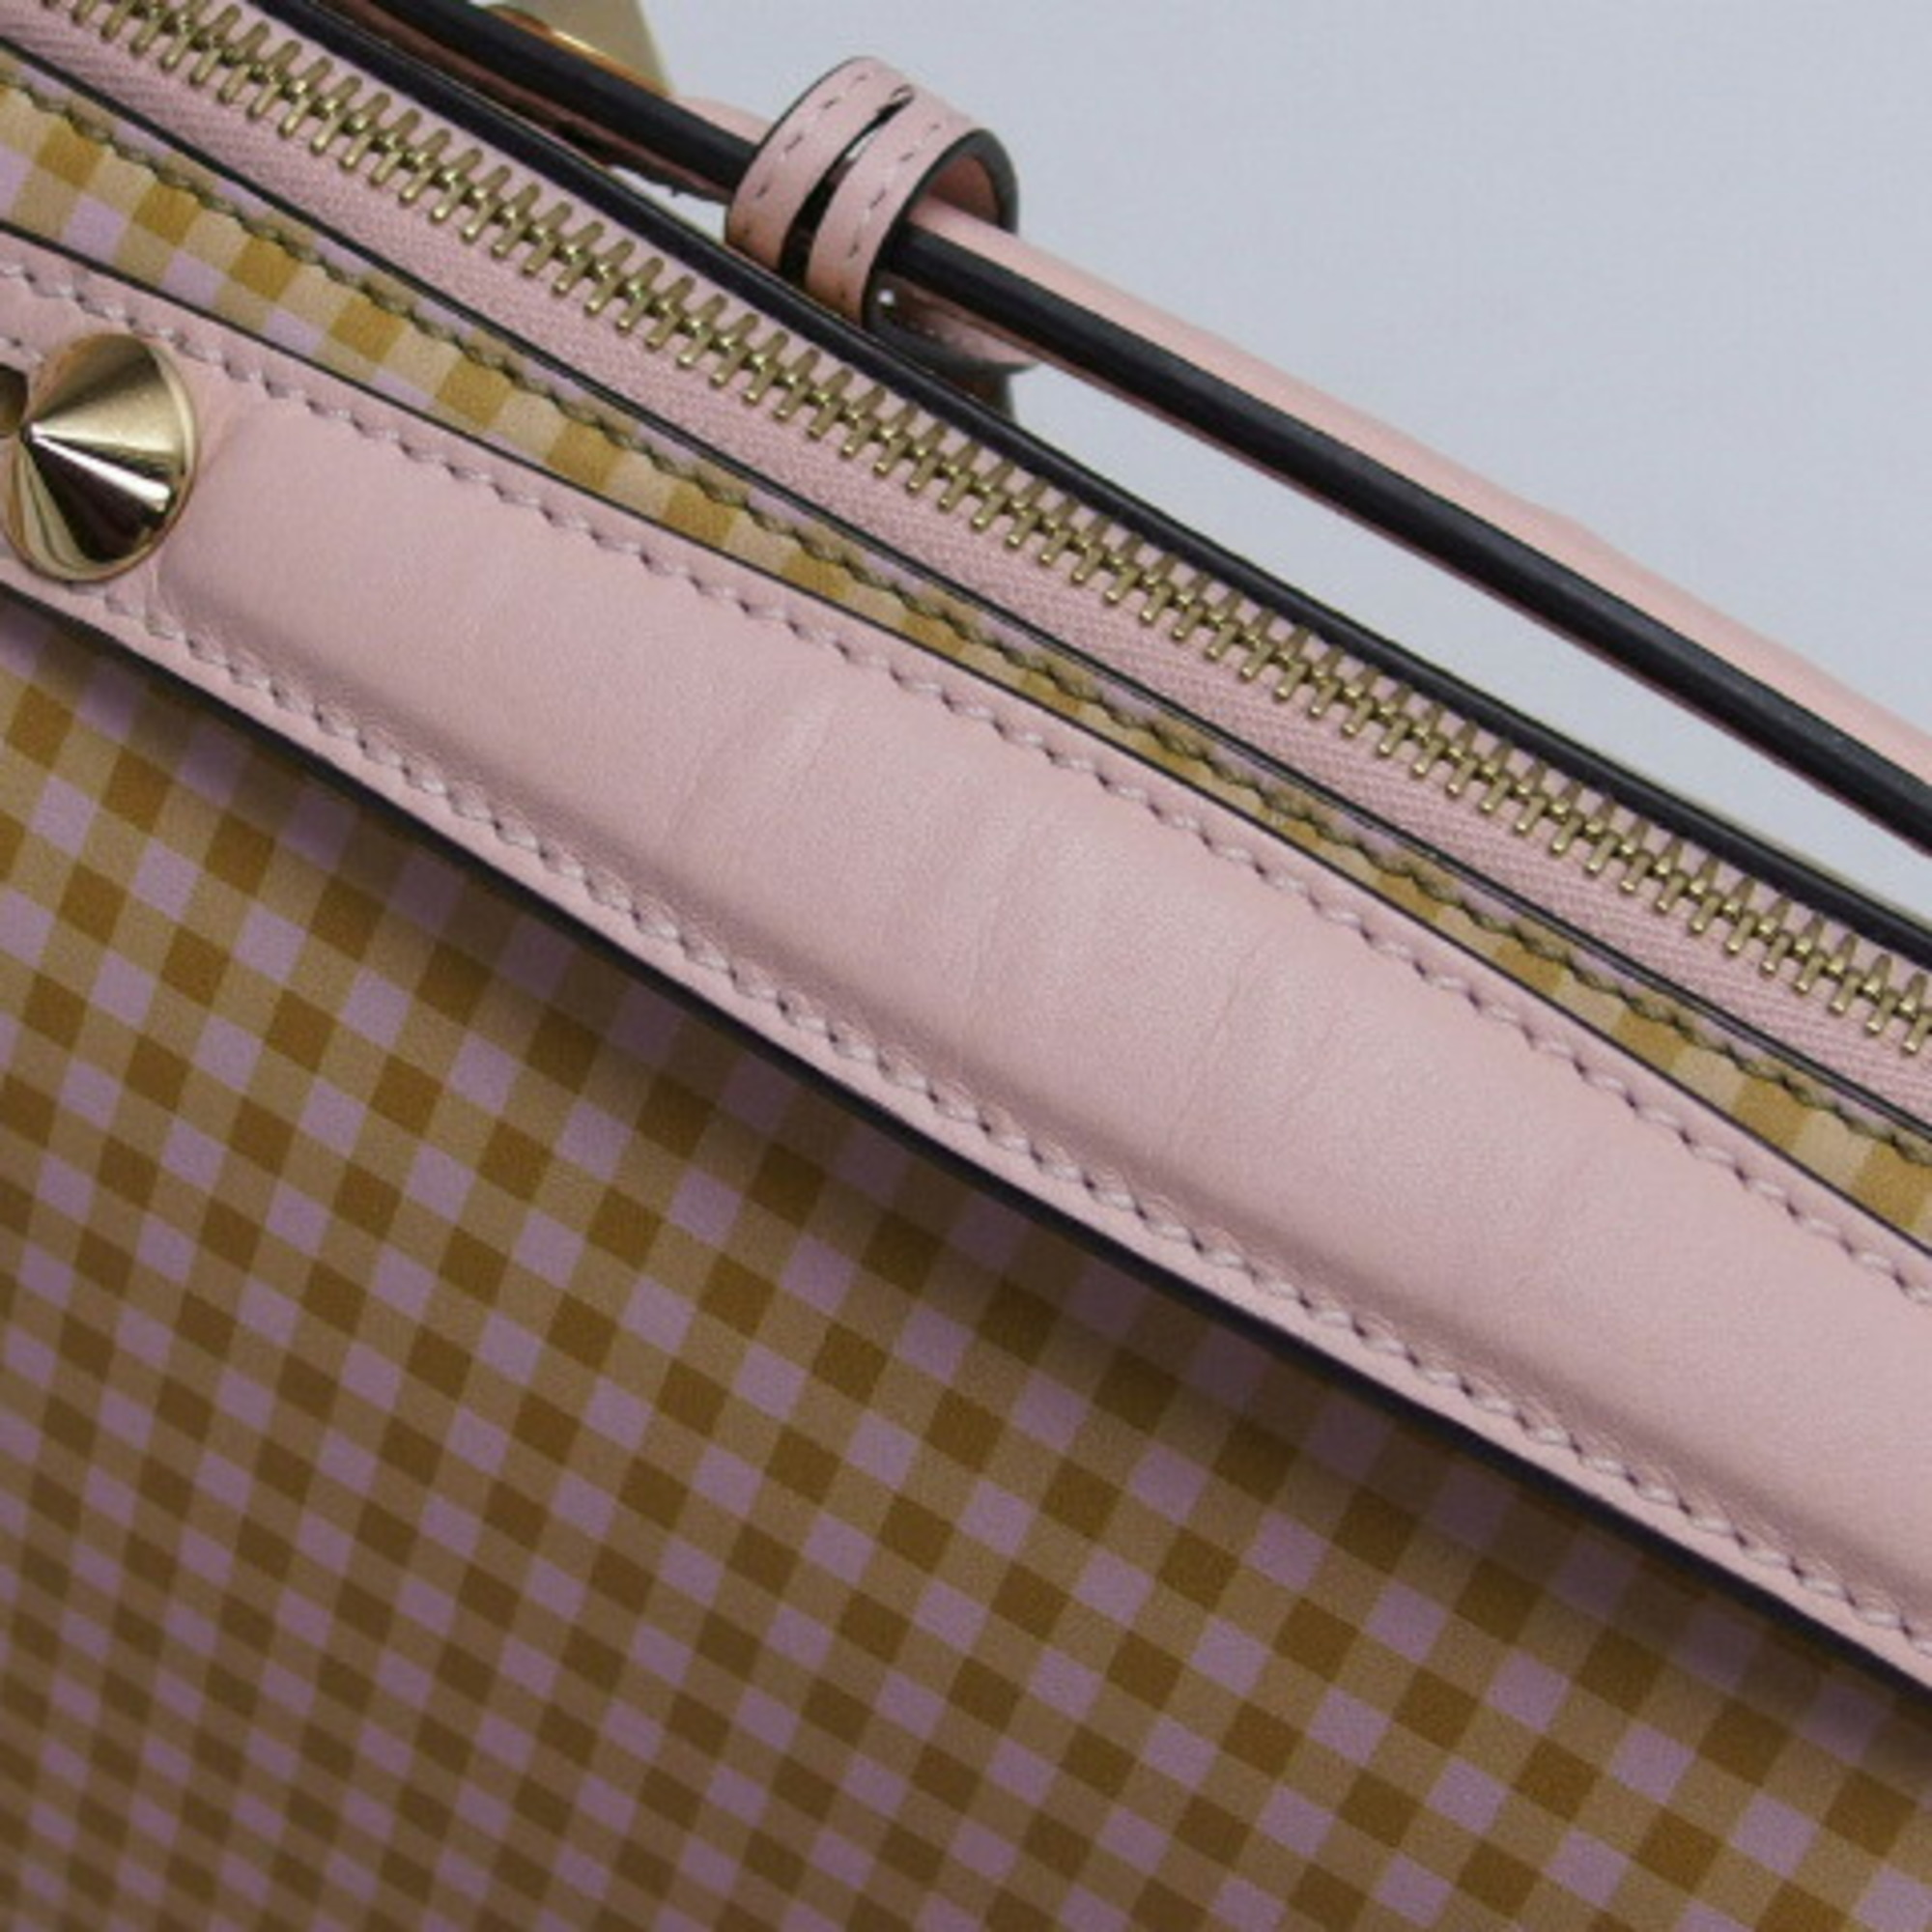 Fendi Vitheway Handbag Check Pattern 8BL146